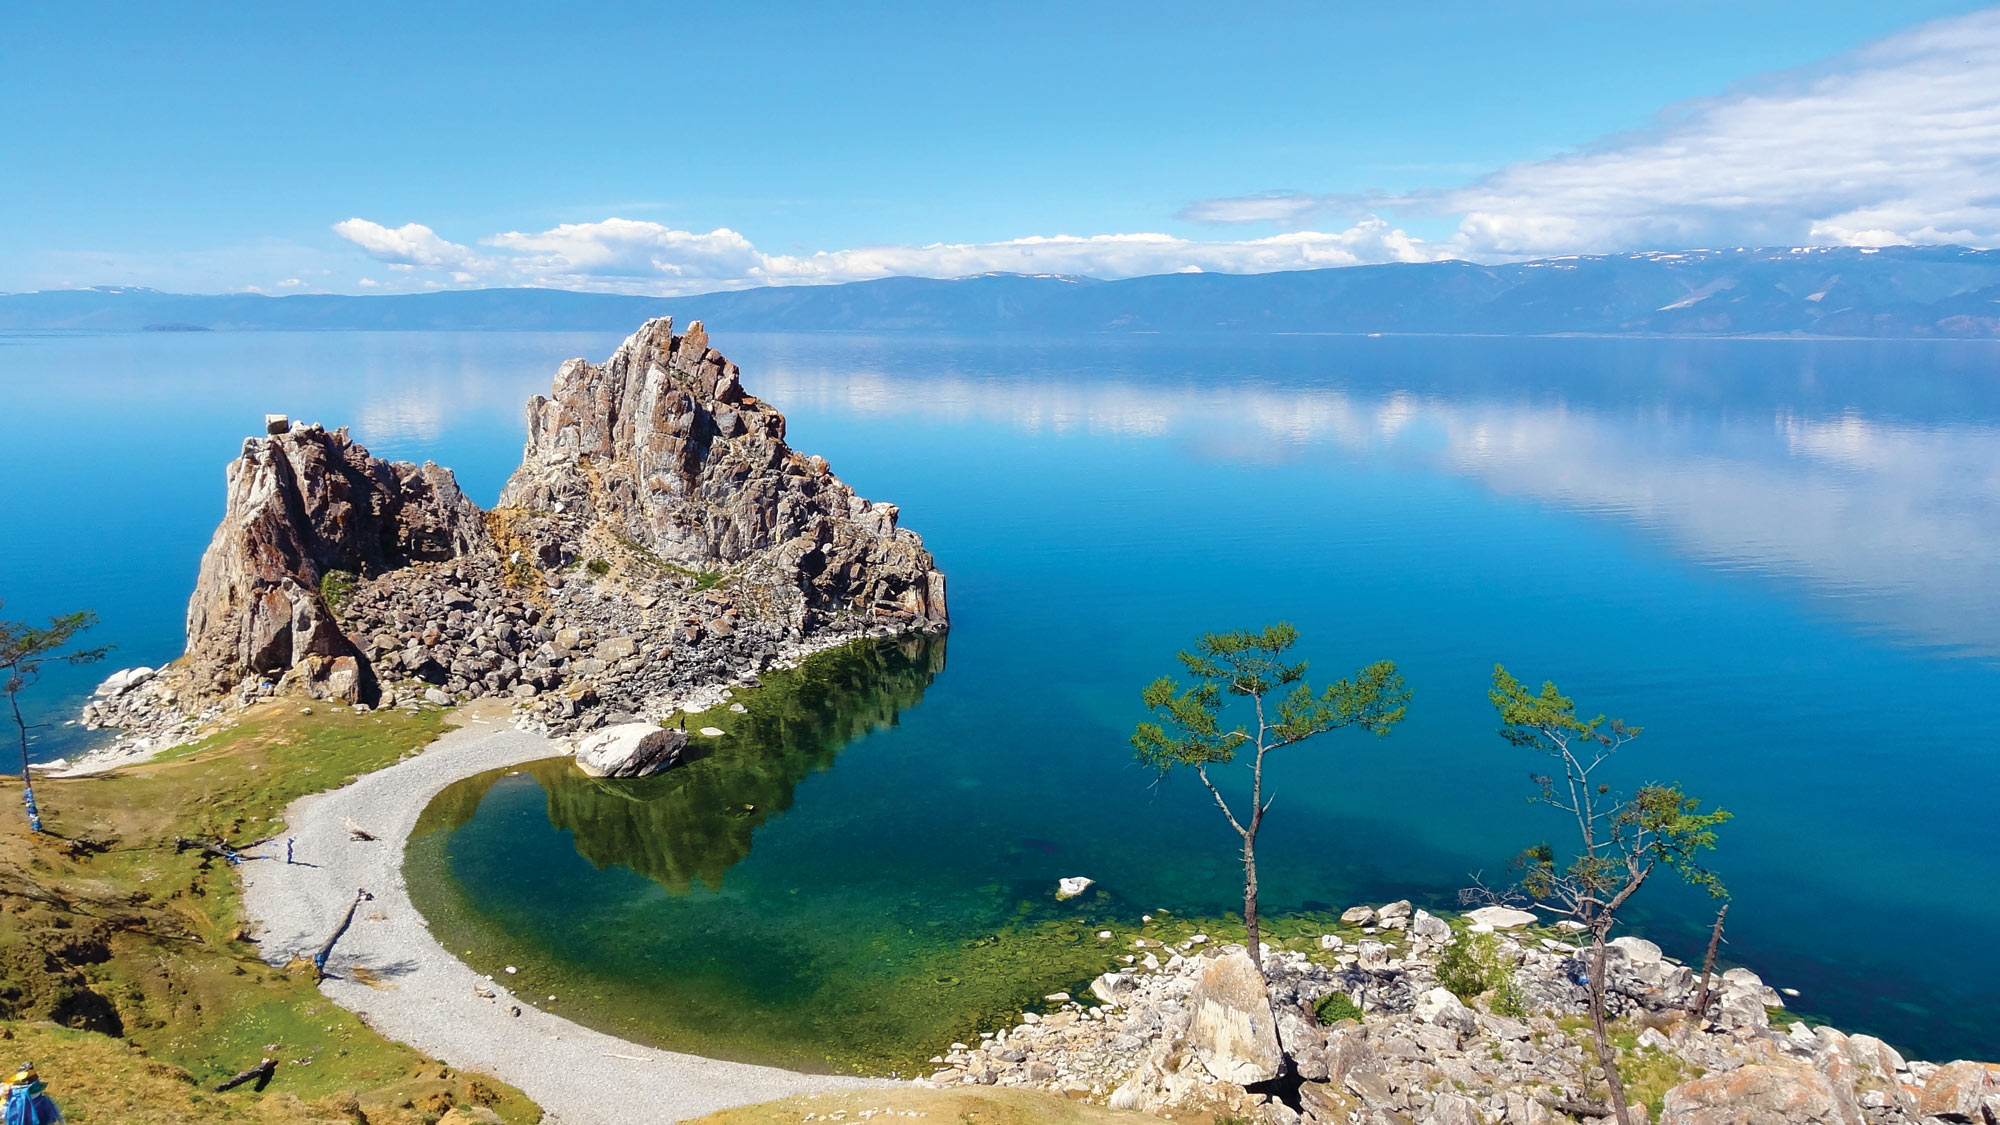 Озеро байкал работы. Восточная Сибирь Байкал. Озеро Байкал ЮНЕСКО. Байкал объект Всемирного наследия ЮНЕСКО. Озеро Байкал природное наследие ЮНЕСКО.